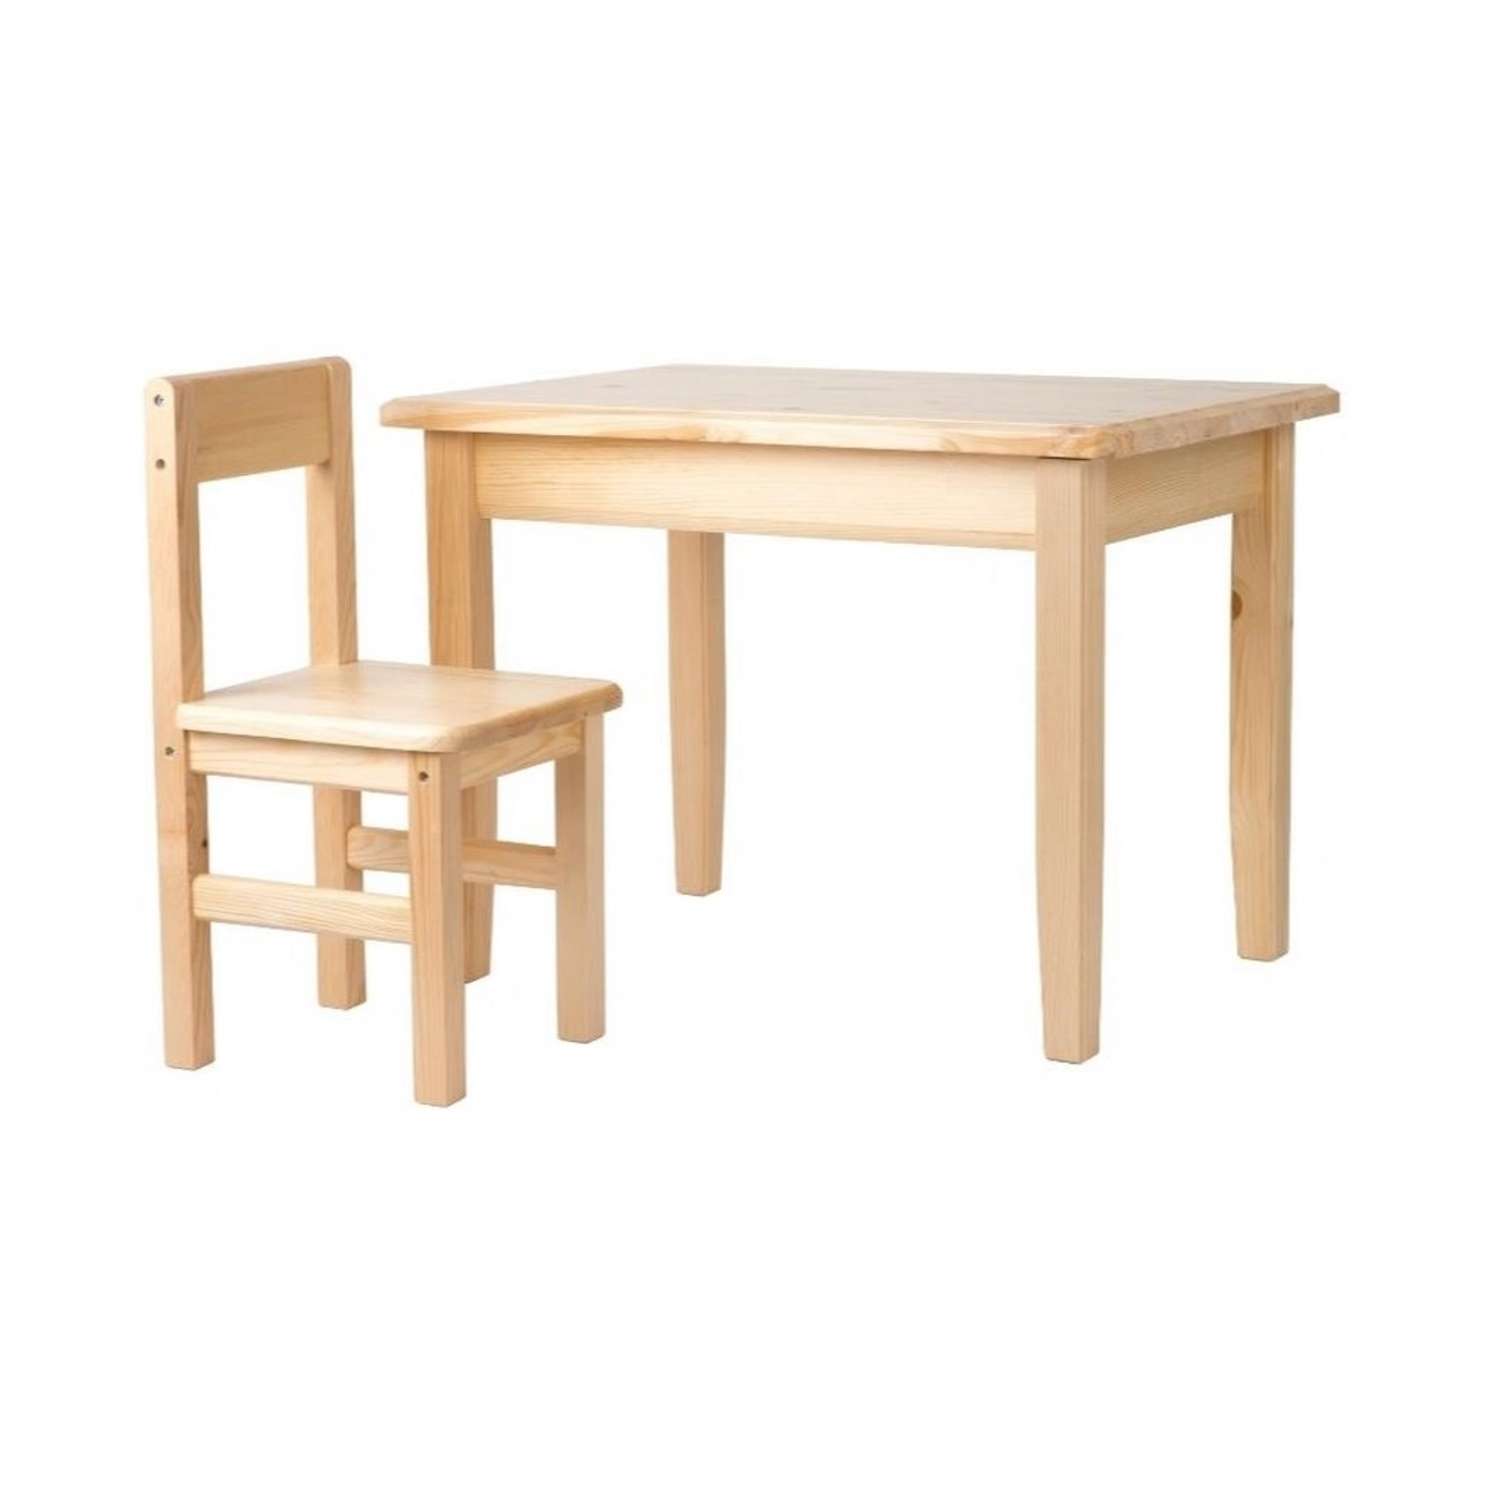 Набор Мебель для дошколят стол со стульчиком для детей от 2 до 4 лет - фото 1